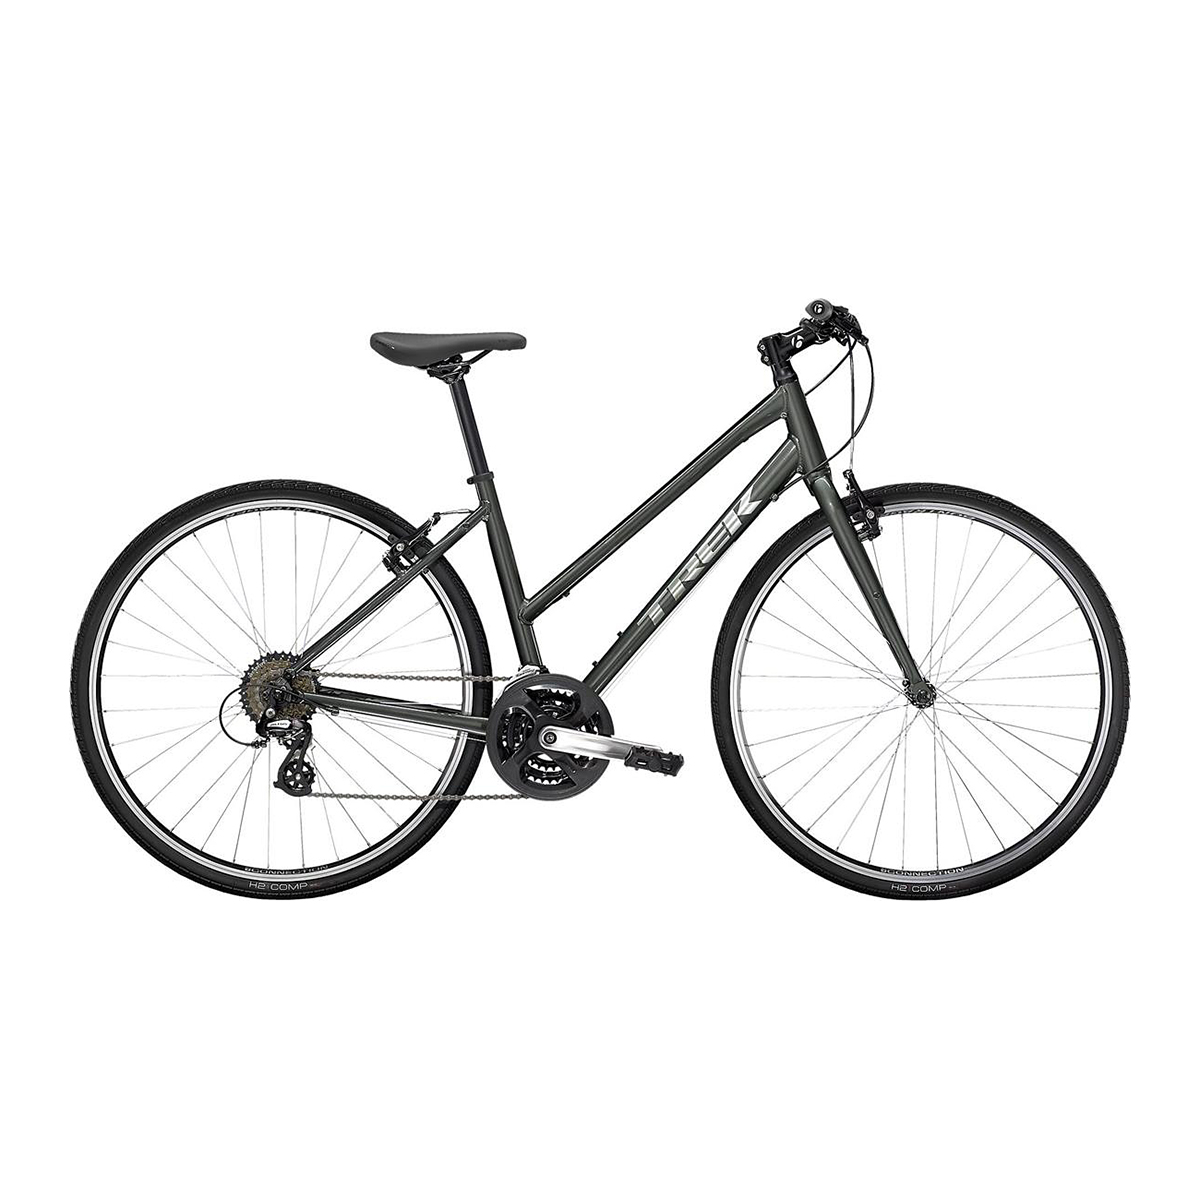 Bicikl Trek Fx 1 Stagger Lithium Grey | BikerShop